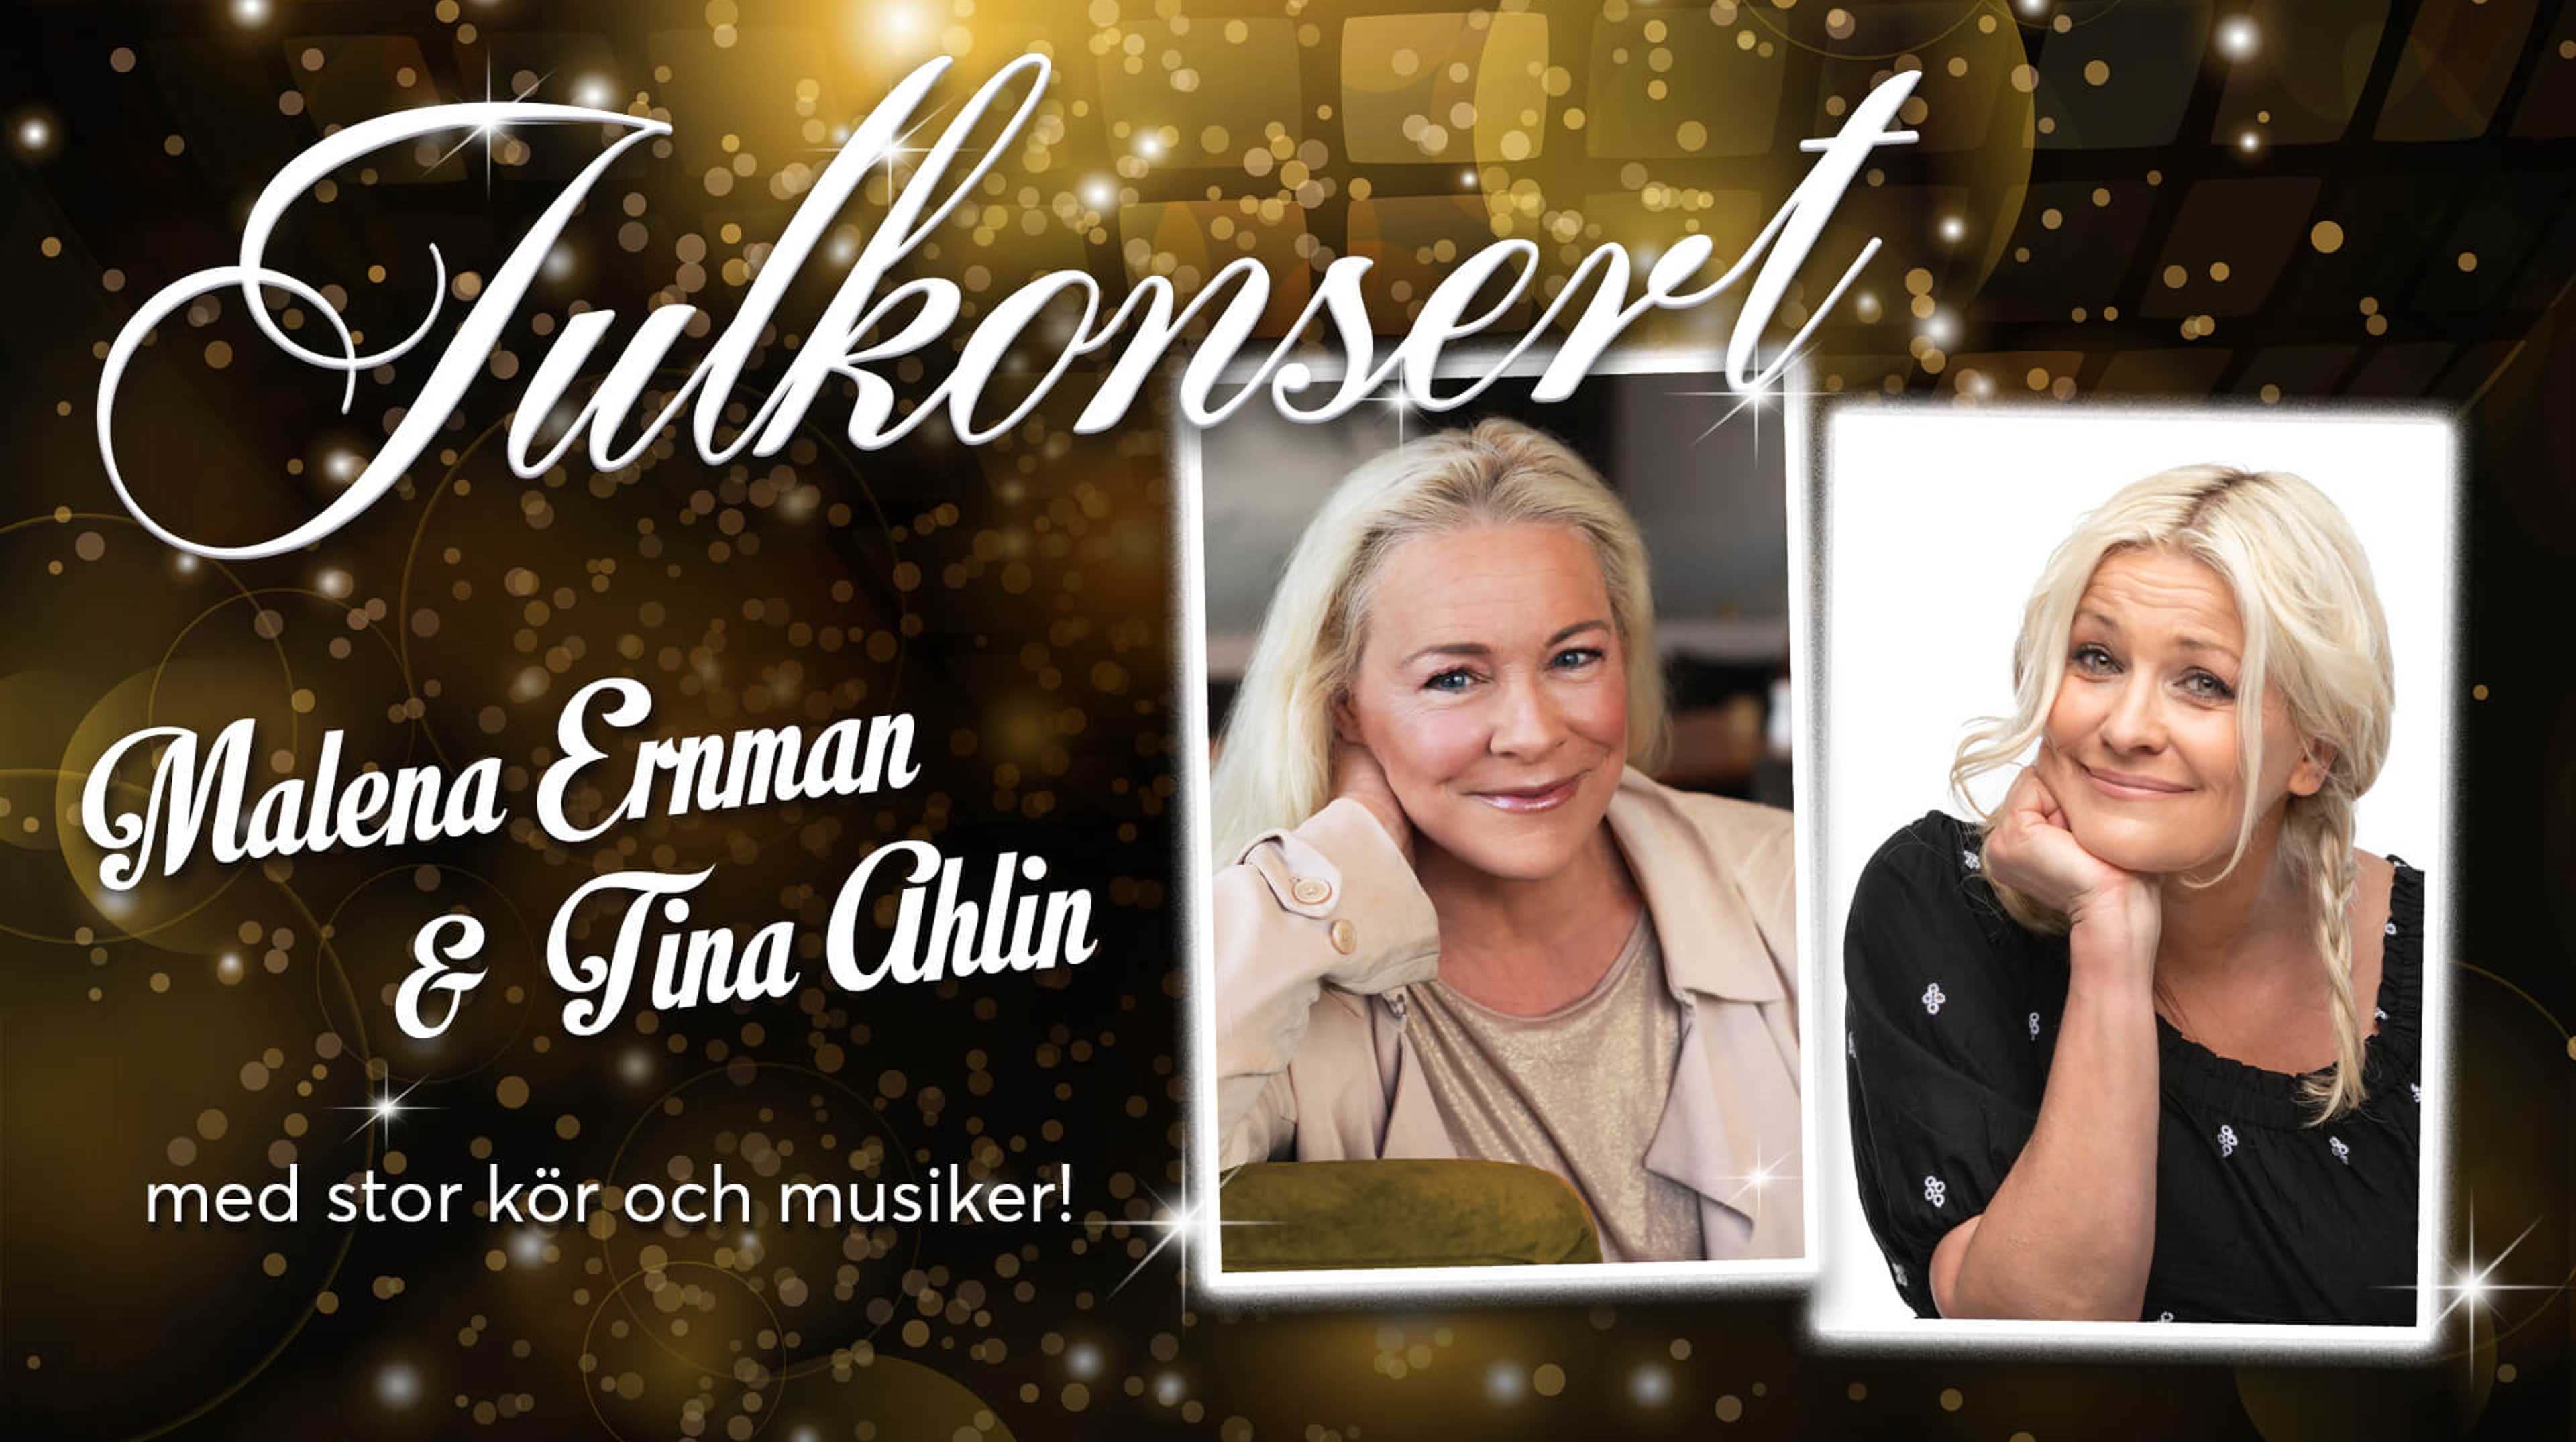 Malena Ernman och Tina Ahlin mot en bakgrund i guld. Text: Julkonsert Malena Ernman och Tina Ahlin med stor kör och musiker!